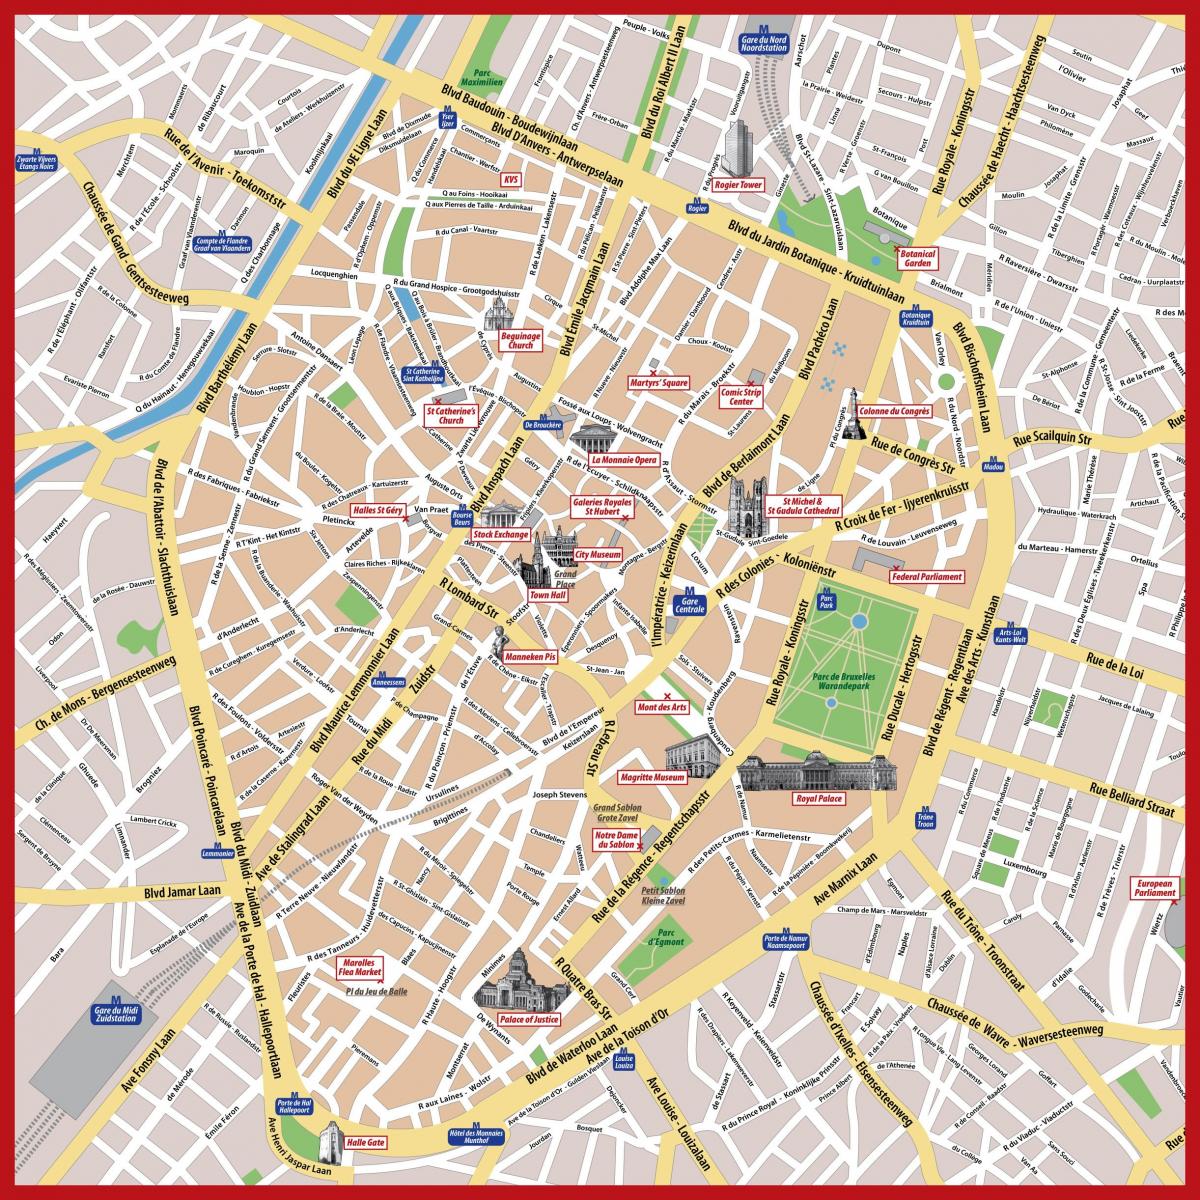 布鲁塞尔街的地图